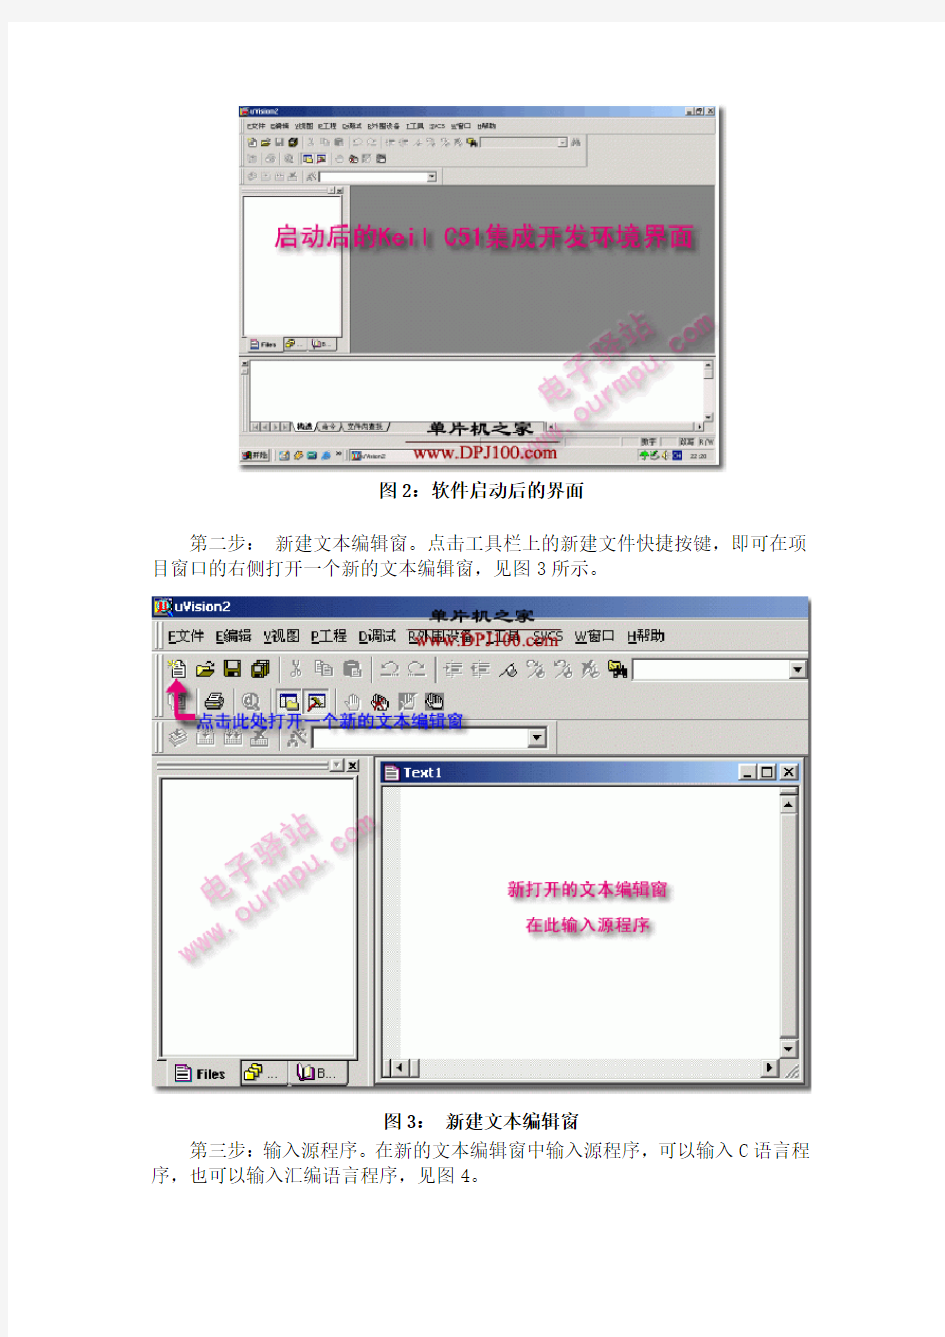 单片机仿真软件Keil C51软件的使用教程(中文版)